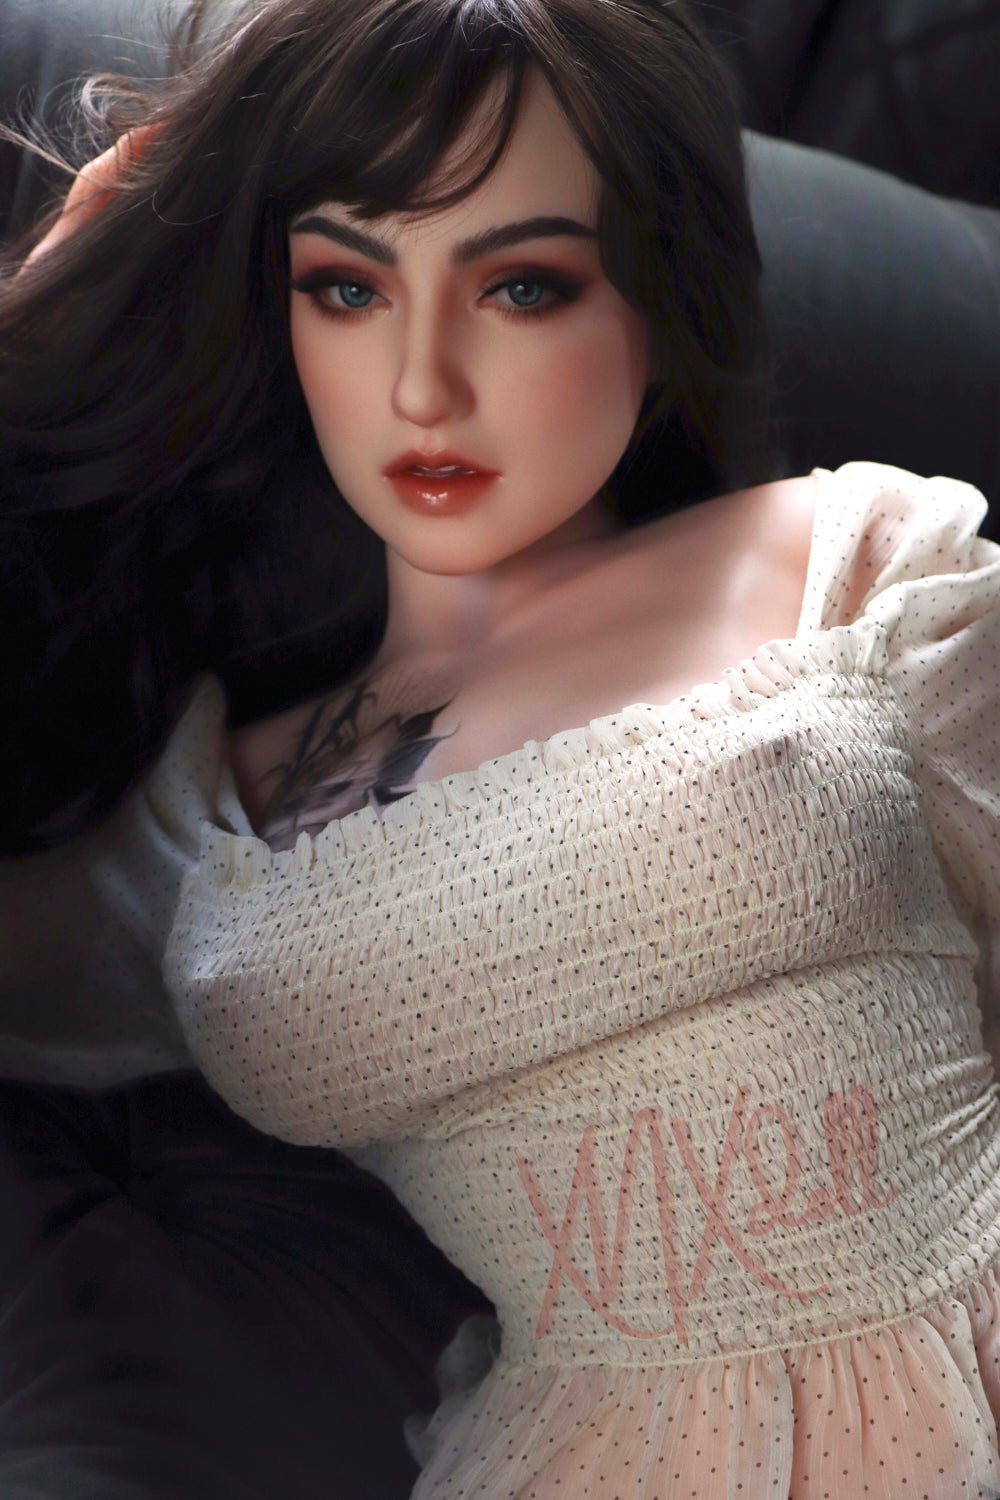 XNX Doll 163 cm X10 Silicone - Georgina | Buy Sex Dolls at DOLLS ACTUALLY